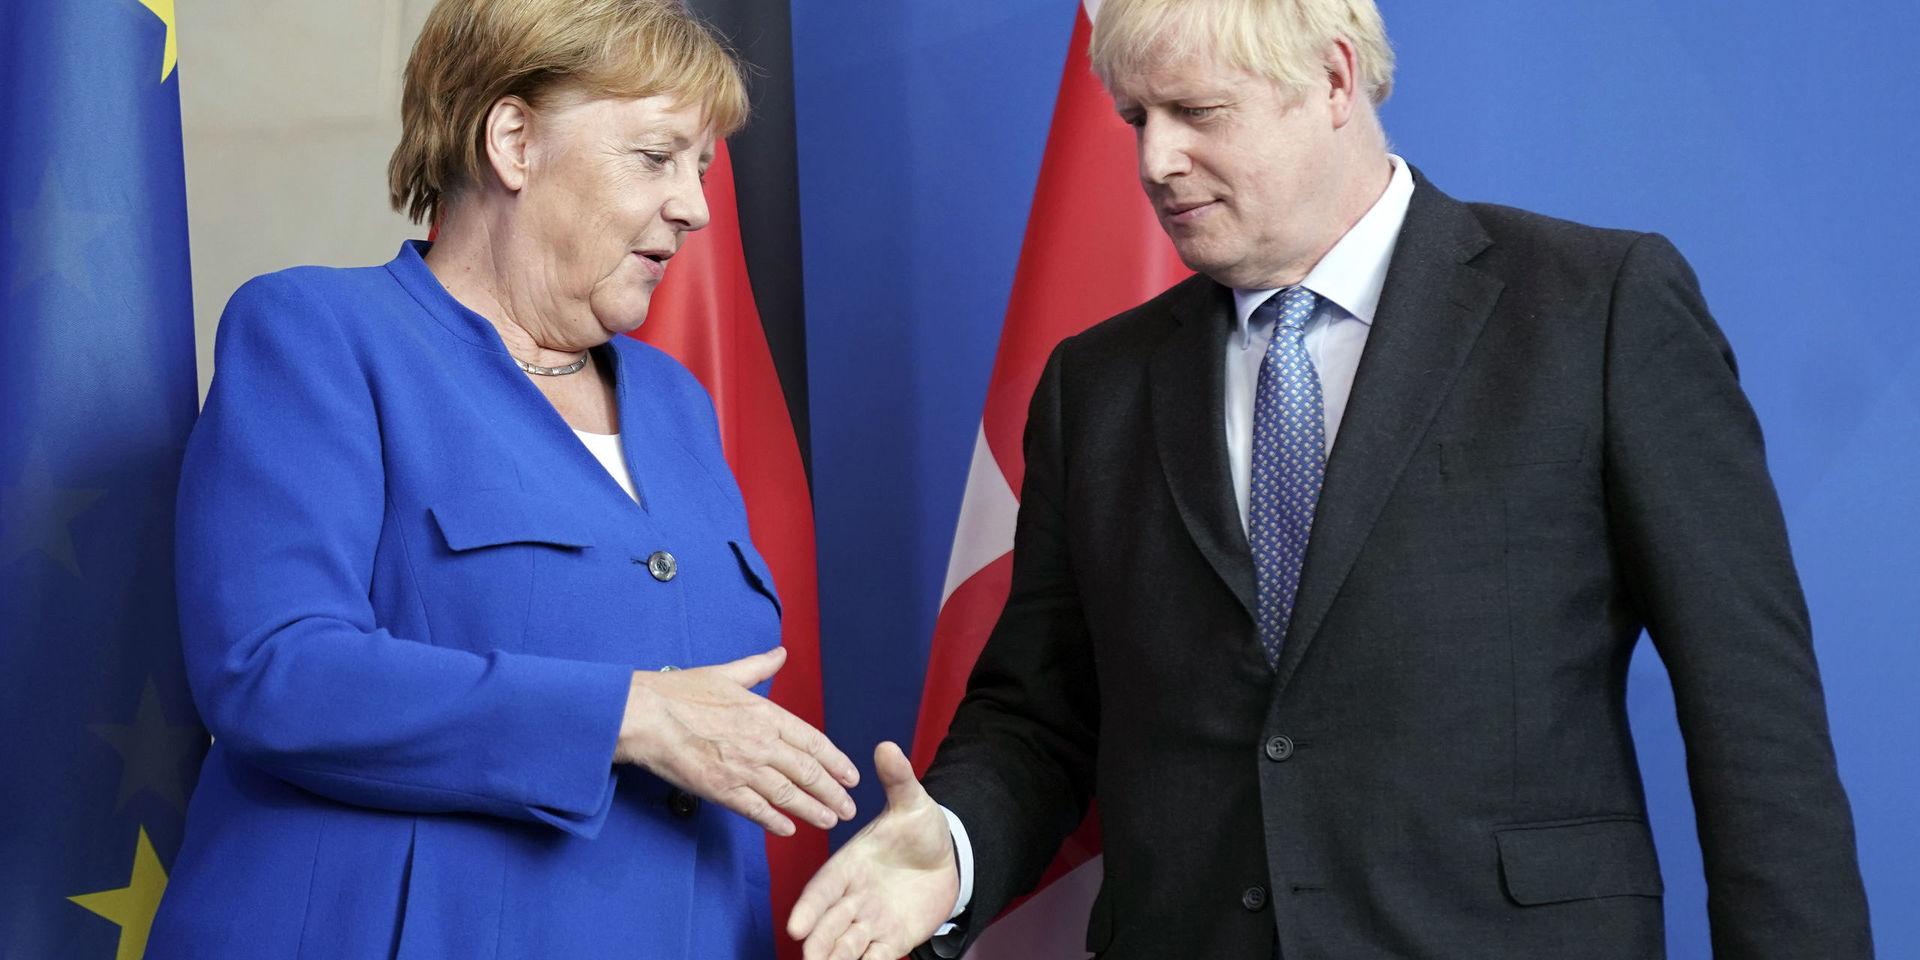 Tysklands förbundskansler Angela Merkel tycks vara öppen för en kompromiss vad gäller brexitavtalet. Här tar hon emot Storbritanniens premiärminister Boris Johnson i Berlin.